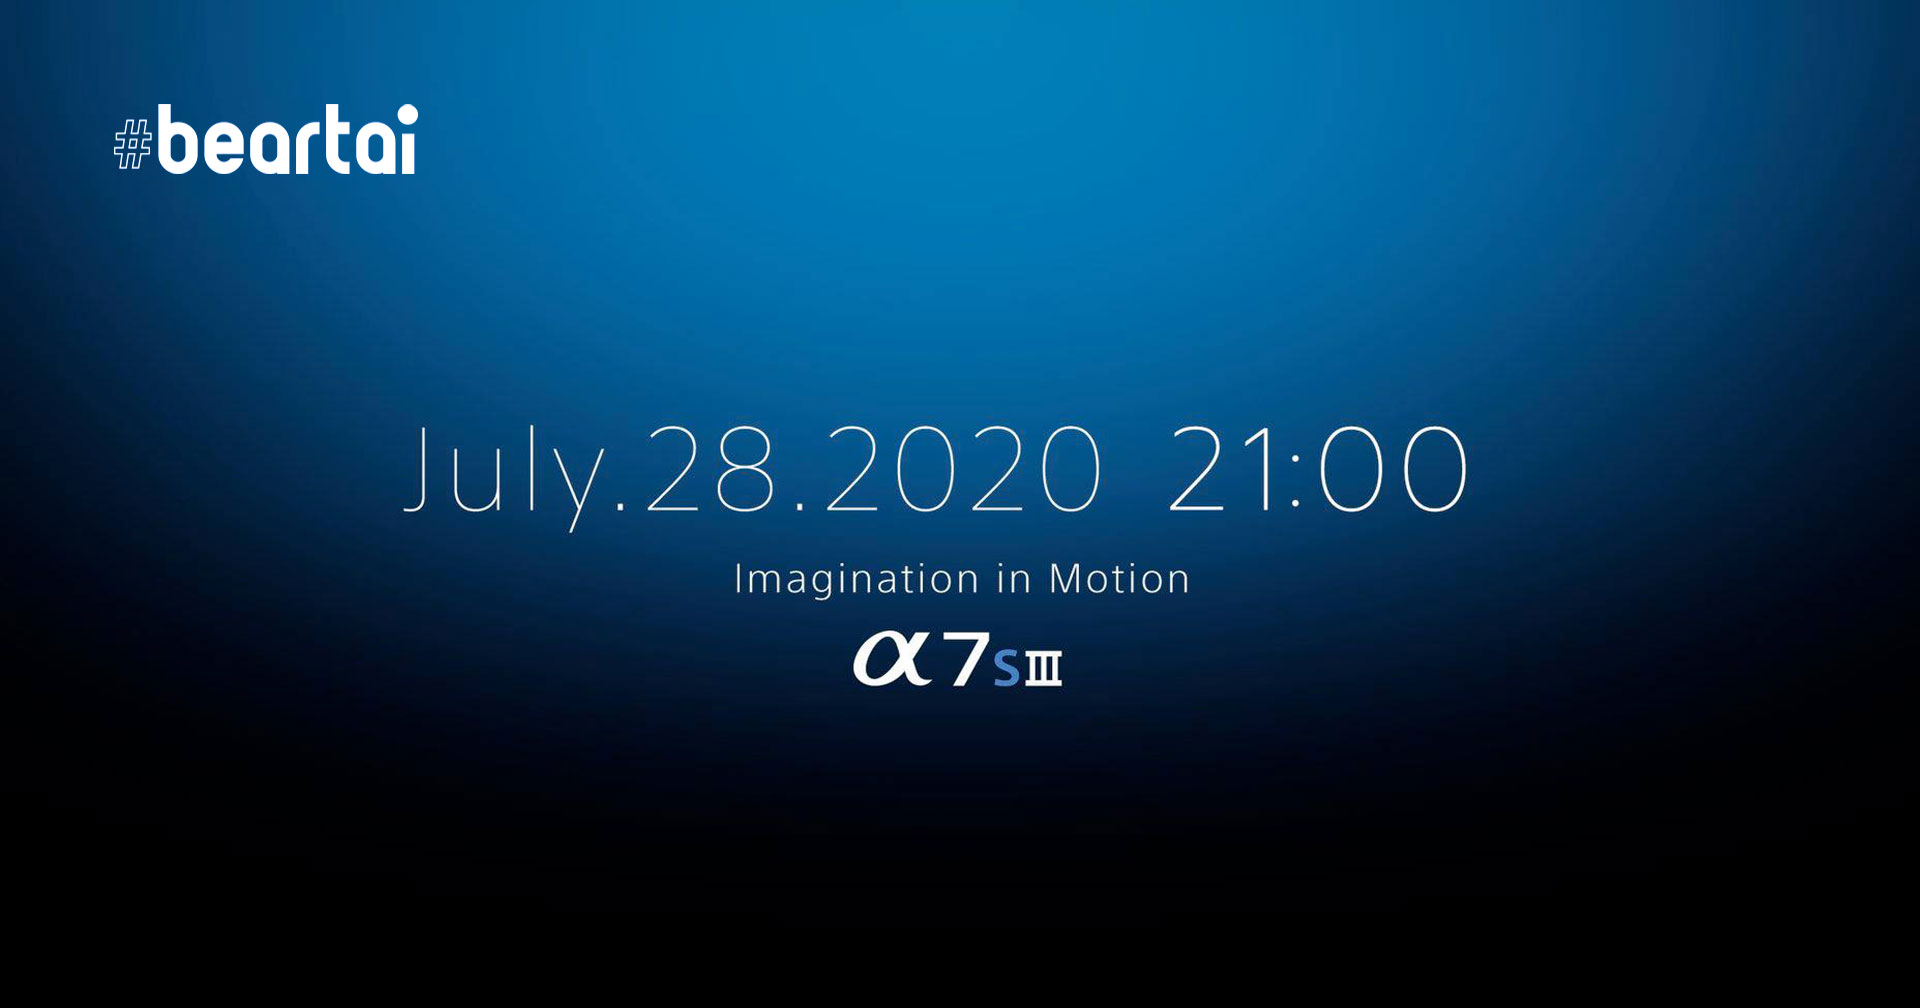 ยืนยันแล้ว Sony เตรียมเปิดตัวกล้อง A7sIII วันที่ 28 กรกฎาคมนี้